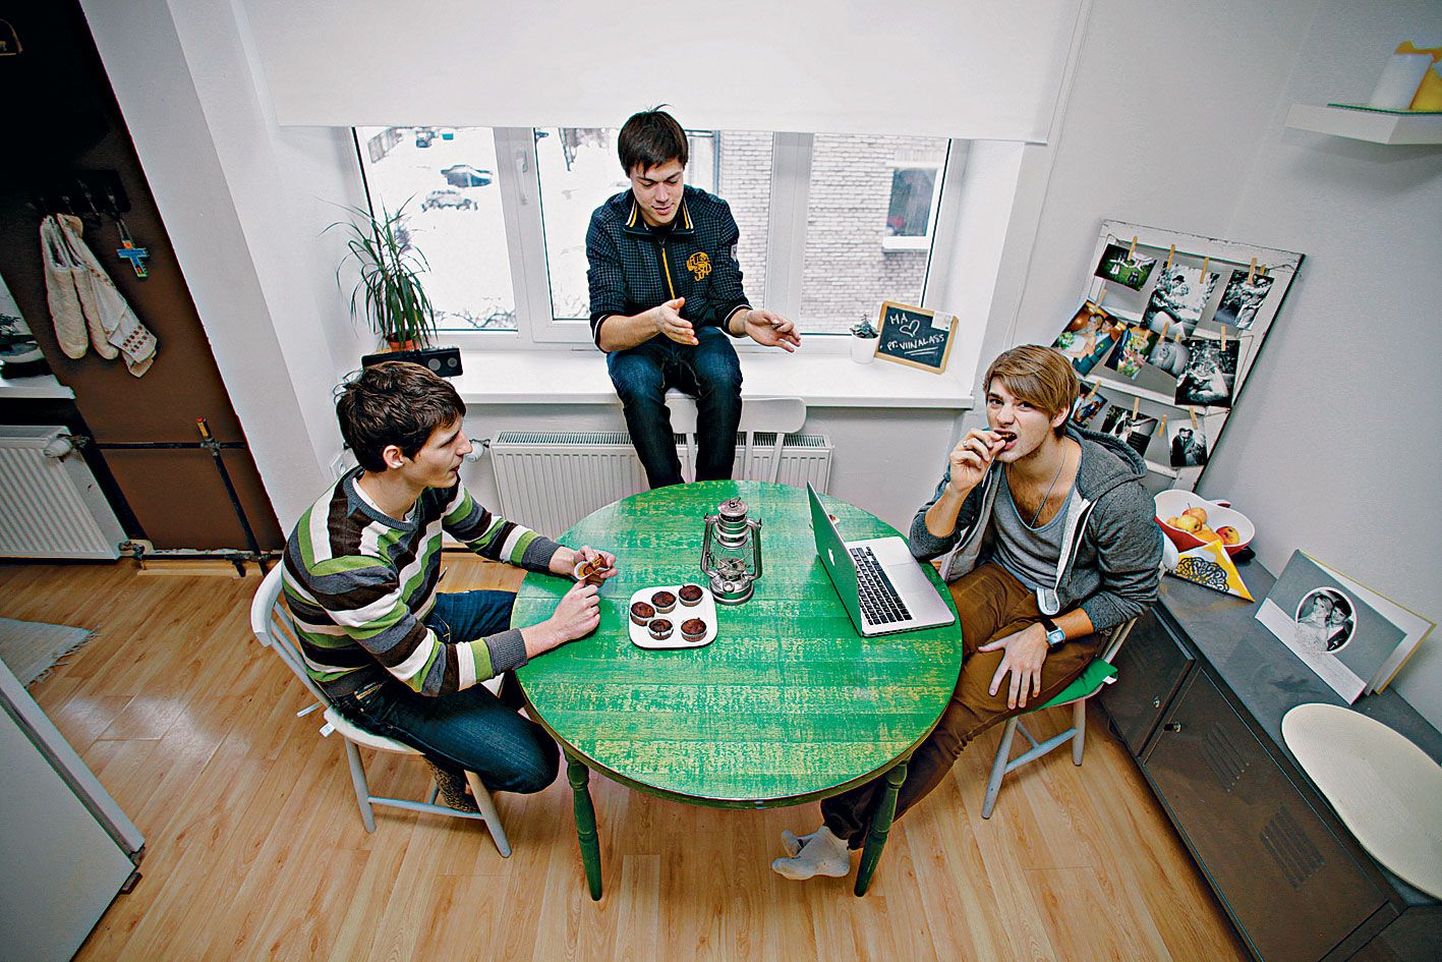 Enam-vähem niimoodi video tegemine käiski: kellegi kodus ja midagi head mugides. Pildil Lauri Särak (vasakult), Elmo Soomets ja Daniel Levi Viinalass.